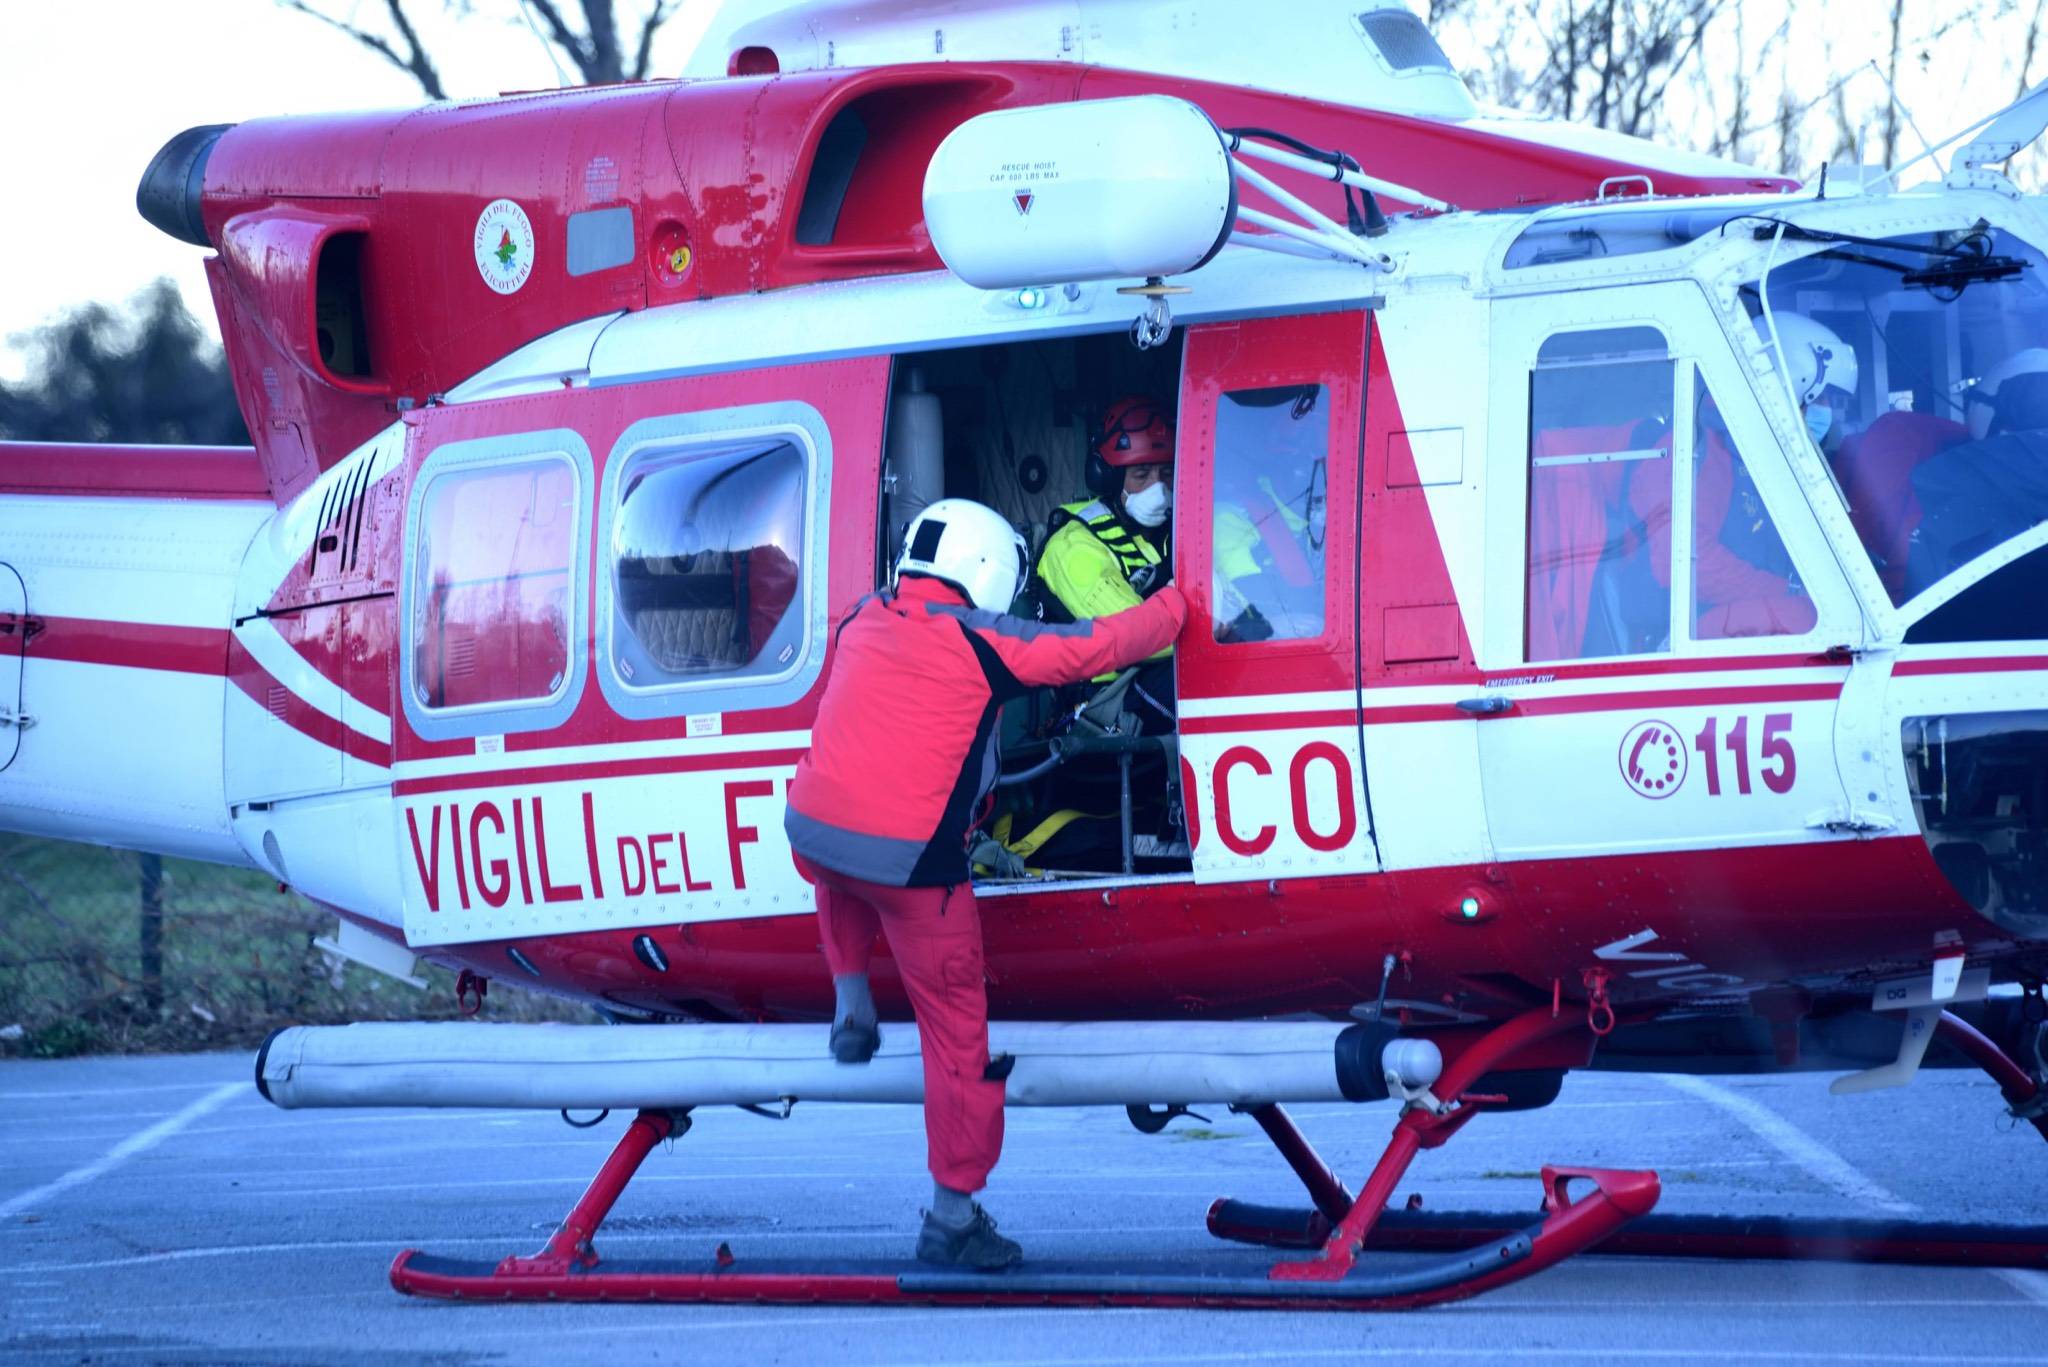 elicottero elisoccorso Drago Vvff vigili del fuoco CITARE AUTORE ROBERTO ROSSI